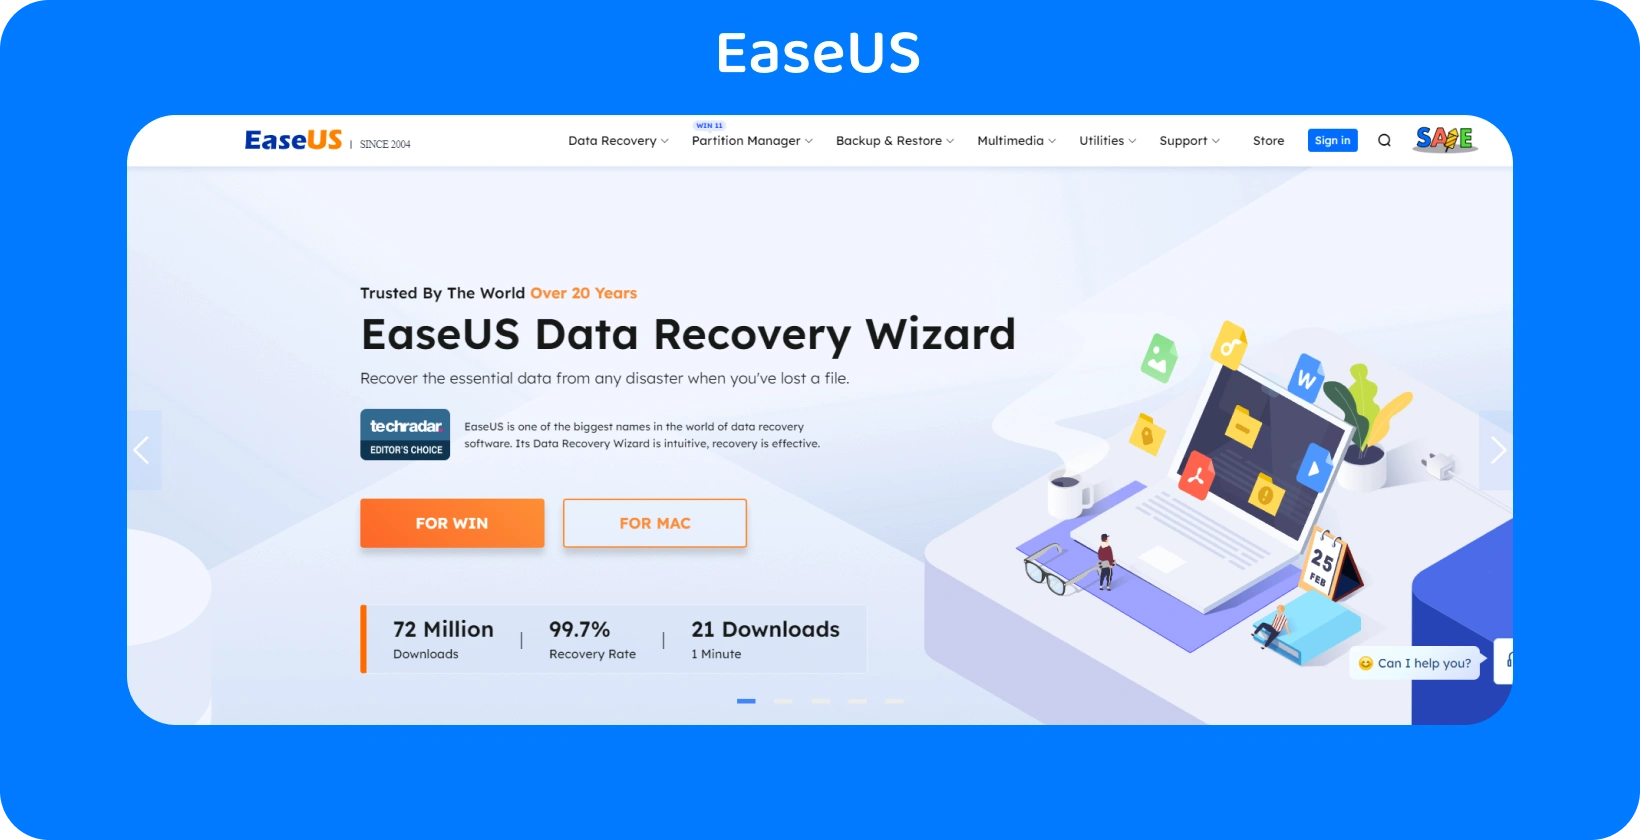 EaseUS веб-сторінка Data Recovery Wizard, що пропонує надійне рішення для відновлення втрачених даних з високою швидкістю відновлення.